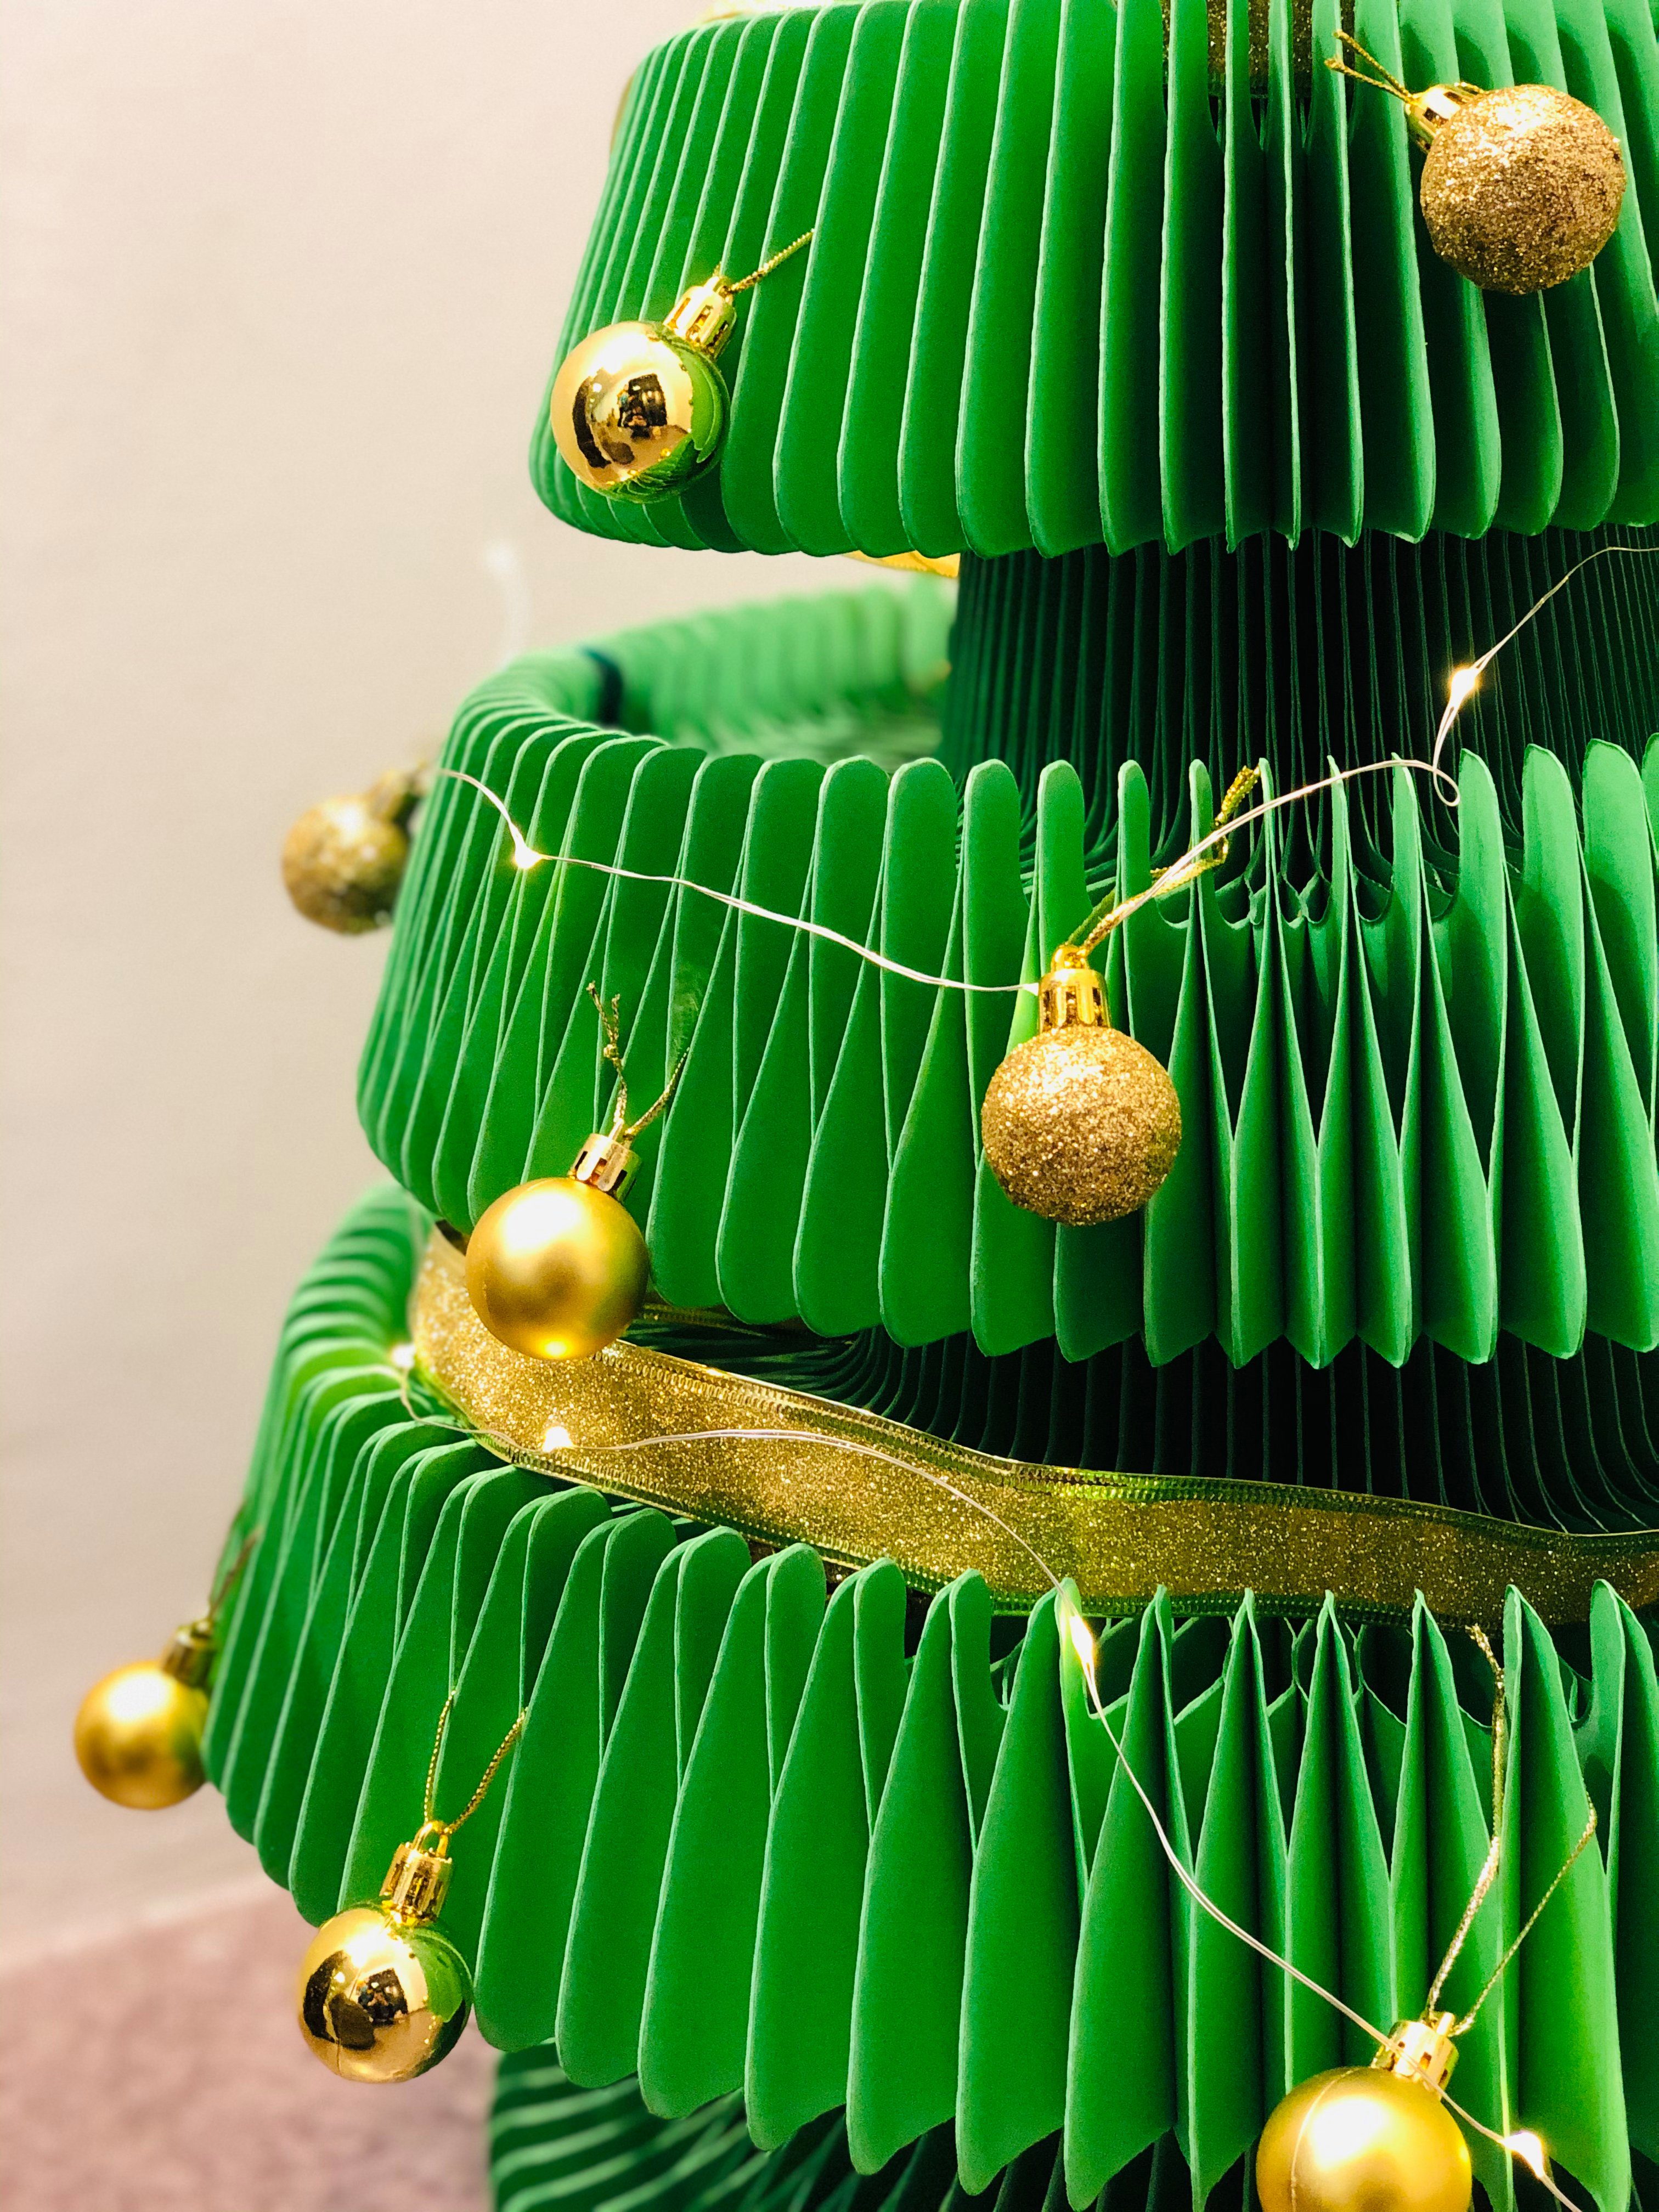 ih paper Tanne, Weihnachtsbaum Künstlicher Papp leicht Tannenbaum, & zu Waben faltbar Baum, Pappe Struktur verstauen Grün Design